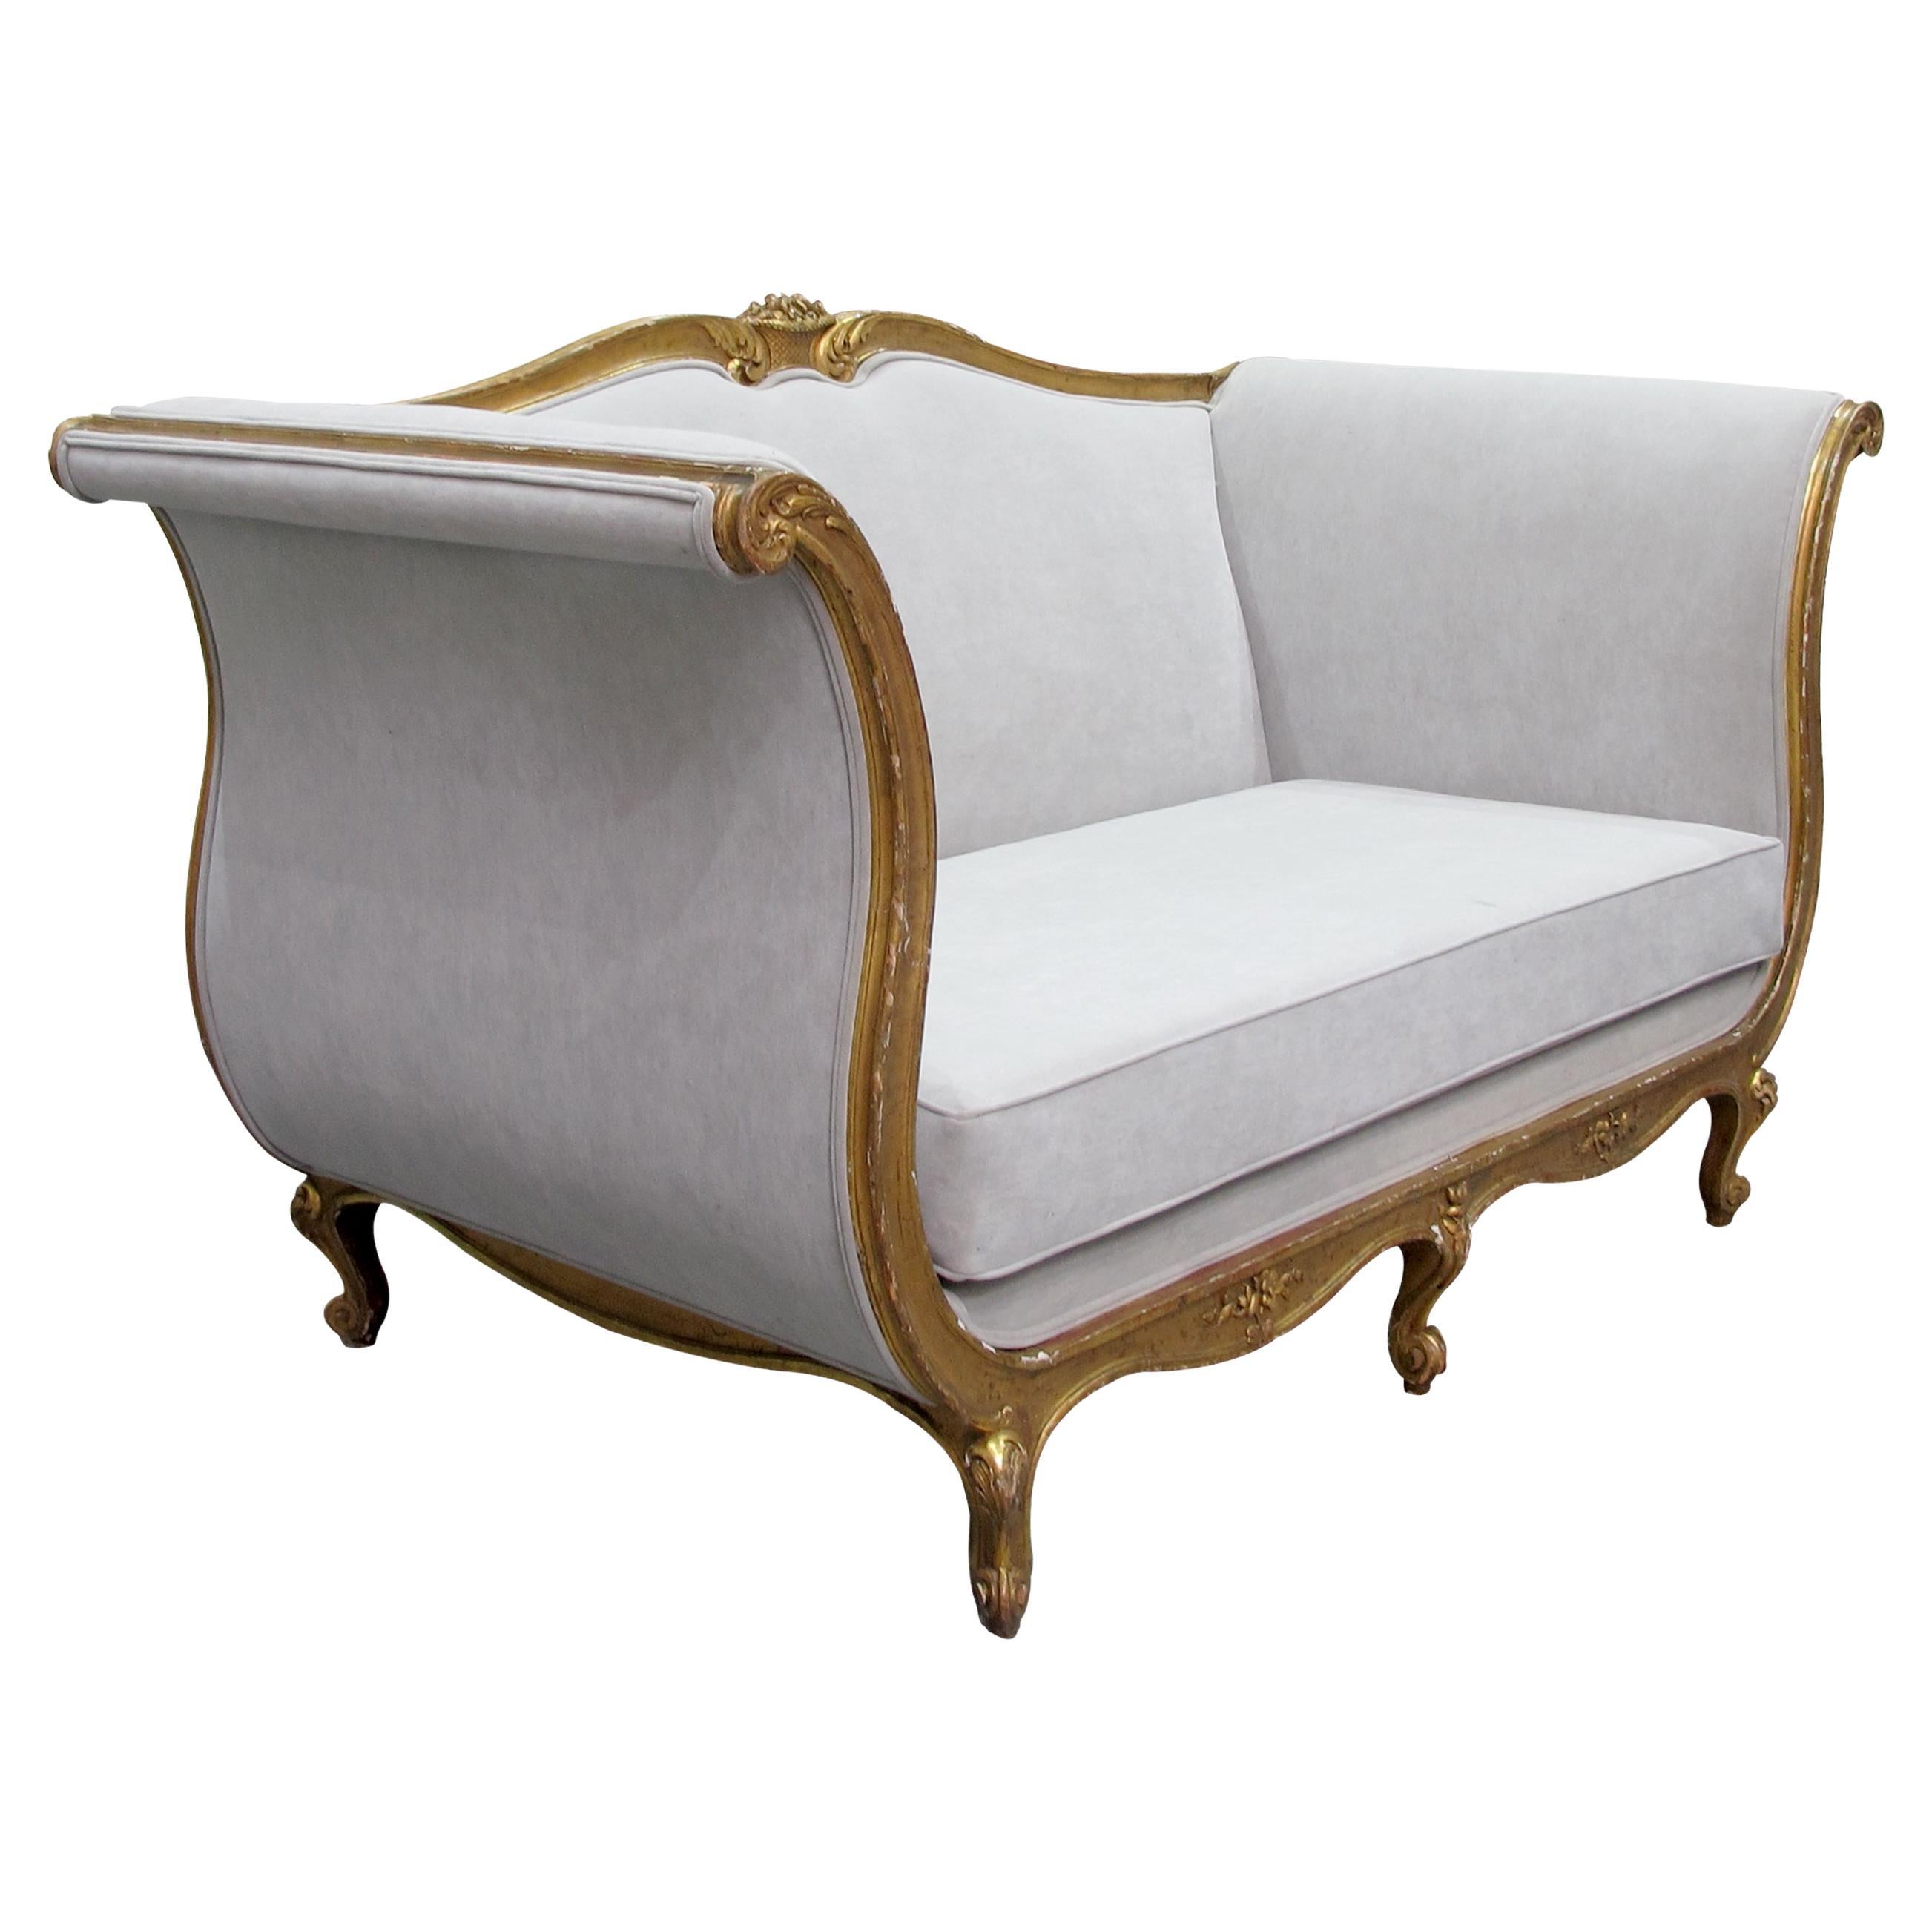 Fin du 19ème siècle, canapé français à grande armature dorée, nouvellement tapissé